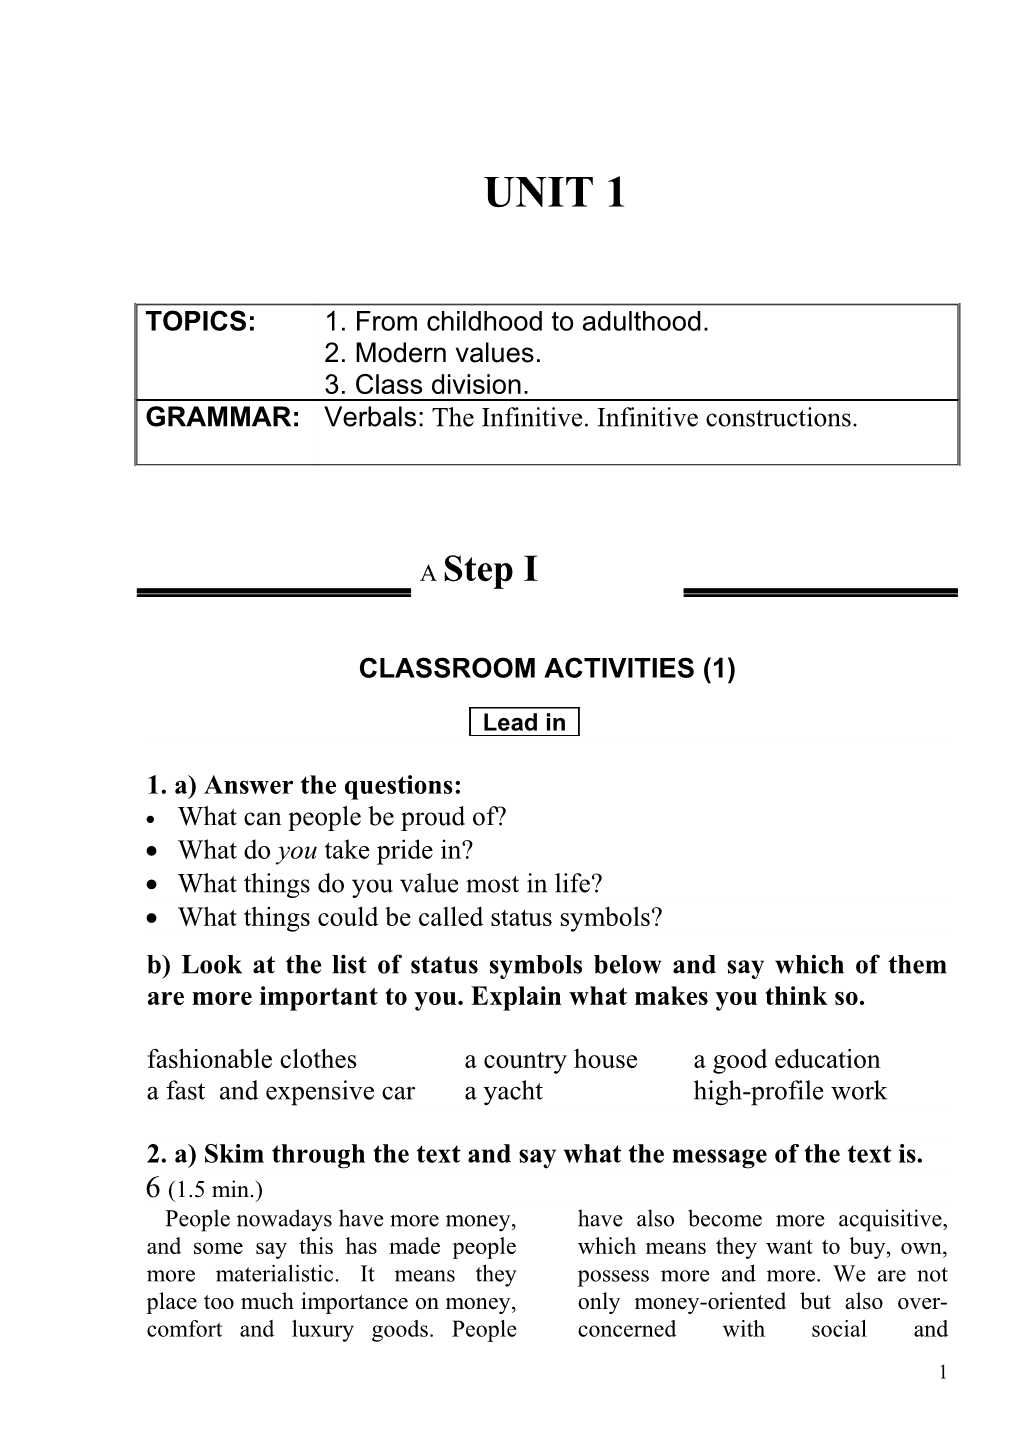 Classroom Activities (1) s1